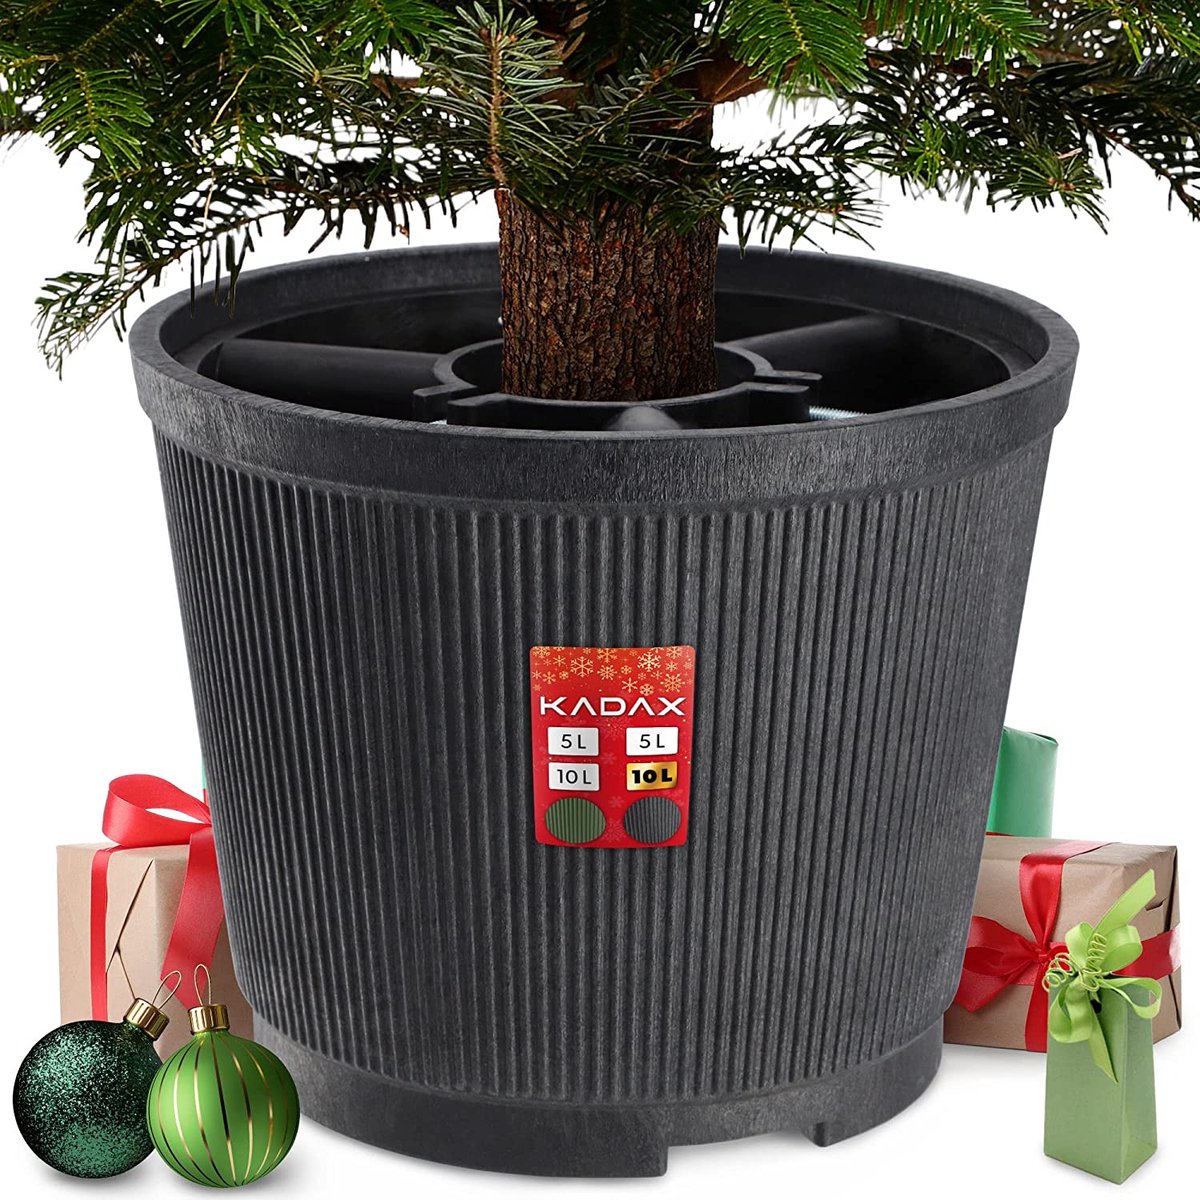 KADAX Kerstboomstandaard, kerstboomstandaard van gerecyclede kunststof, dennenboomstandaard voor een echte boom, standaard voor een kerstboom (boomhoogte tot 250 cm/grafiet)